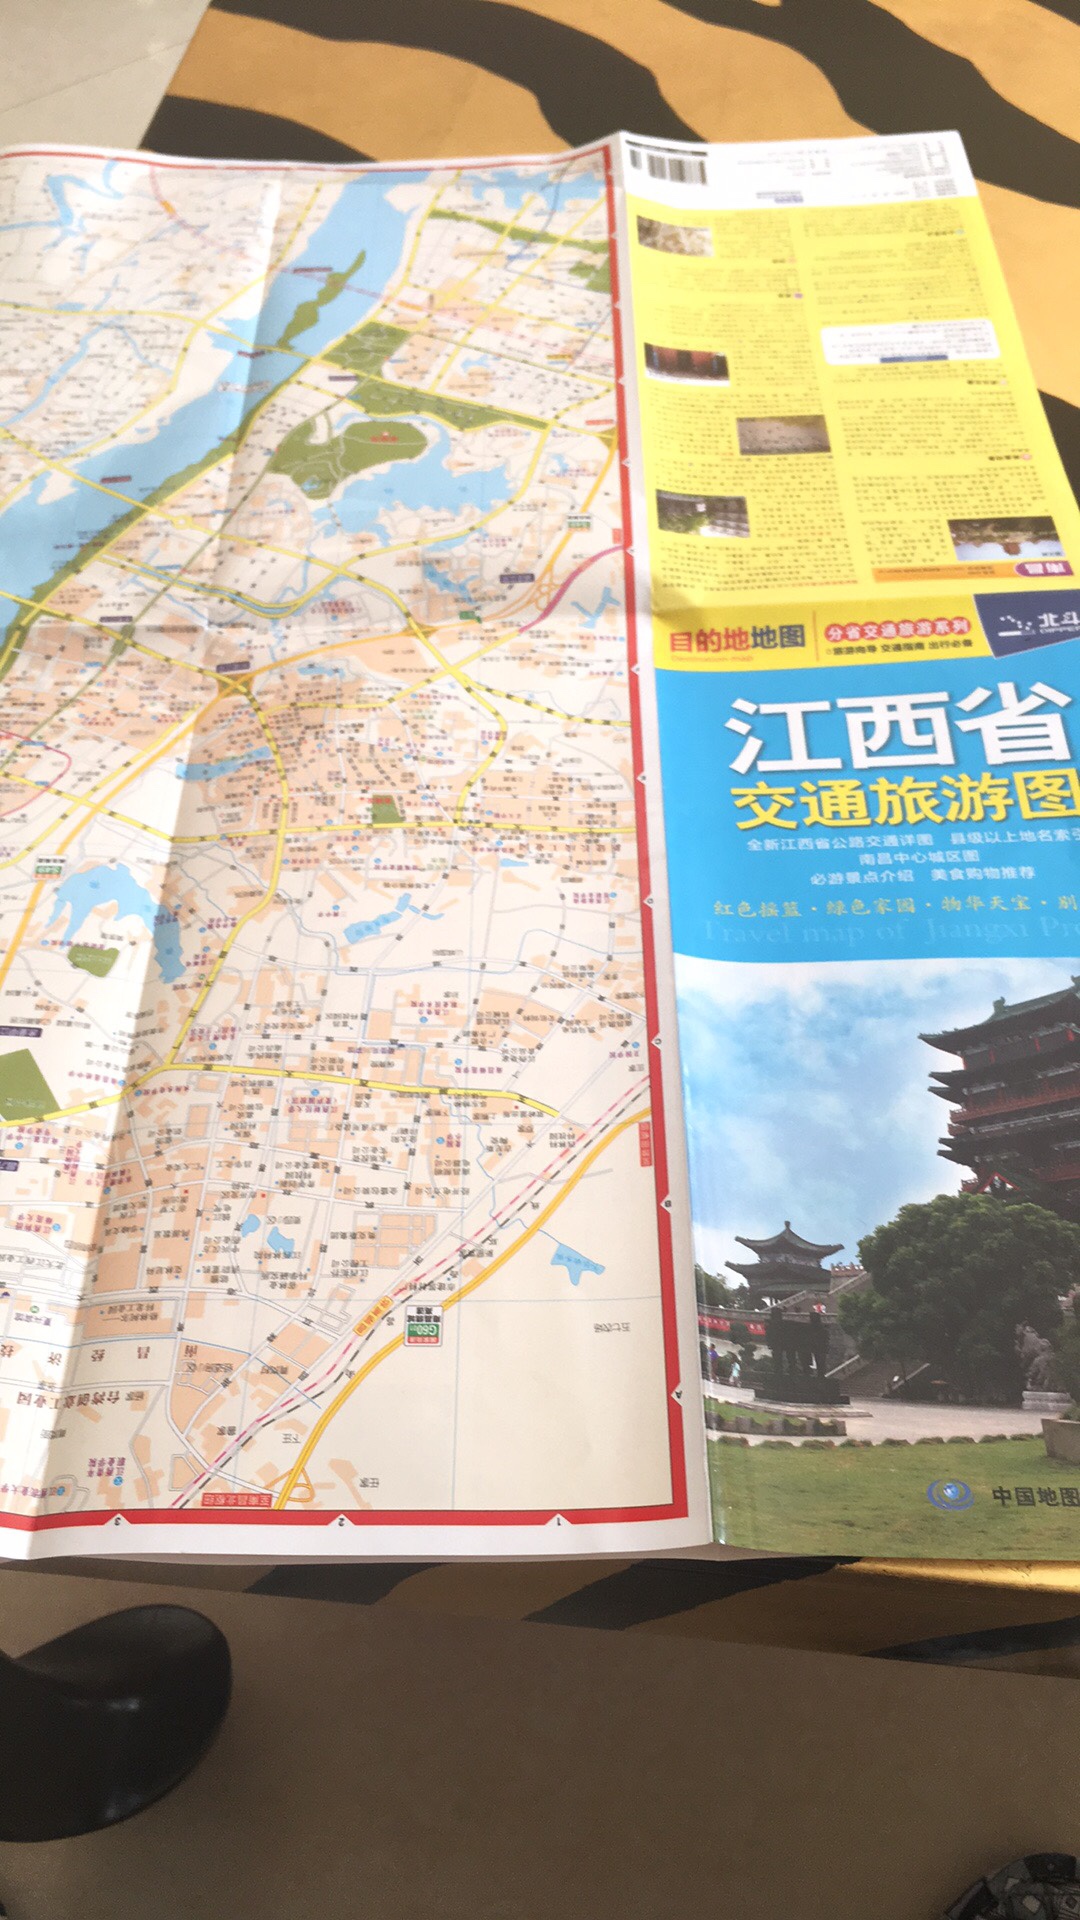 旅游地图，2018新版，马上要去江西自驾旅游，值得拥有。